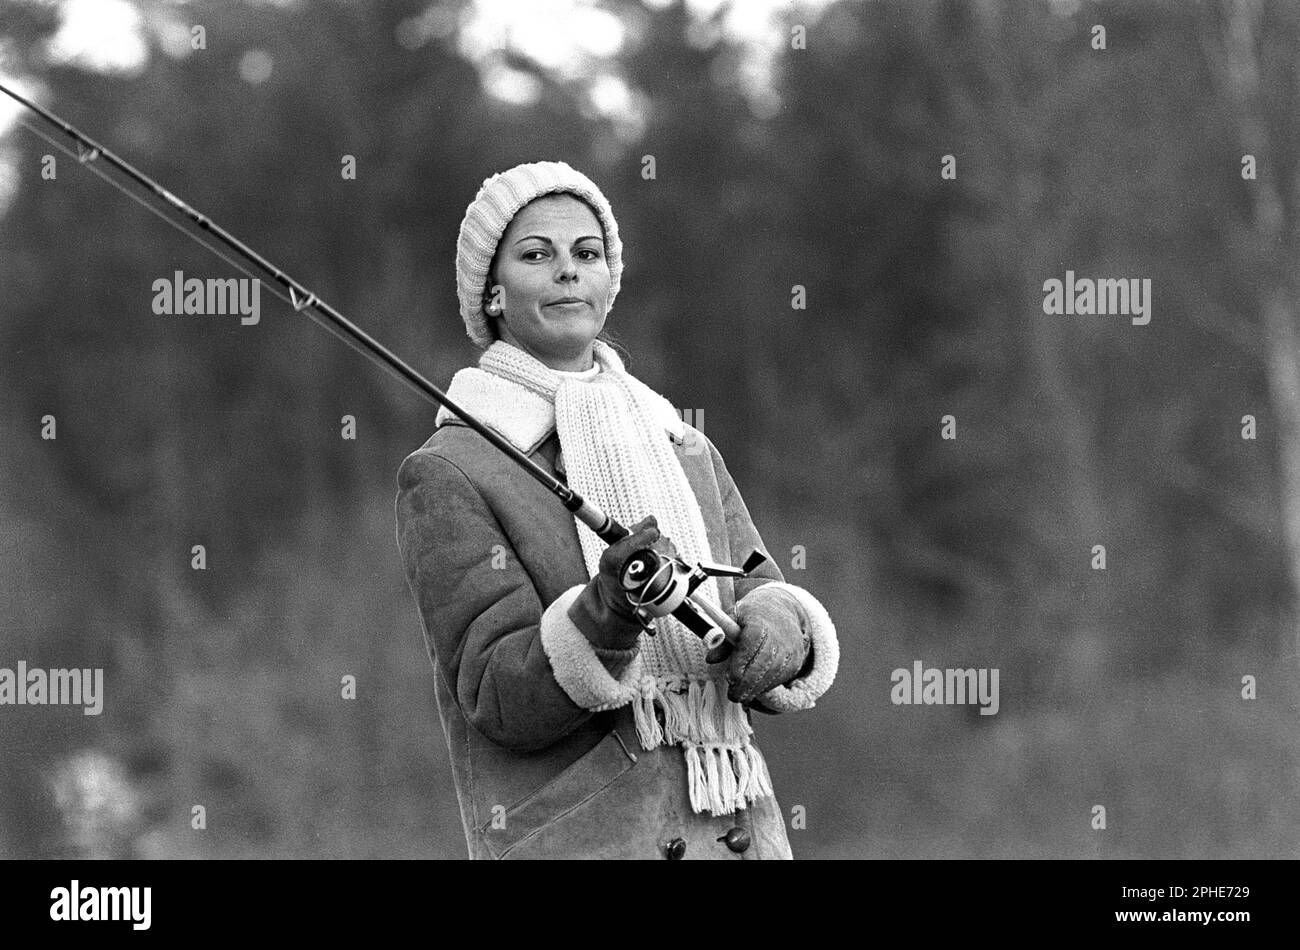 Regina Silvia di Svezia. Nato il 23 dicembre 1943. Moglie del re Carlo XVI Gustaf. Immagine 1976 durante la pesca. Foto Stock